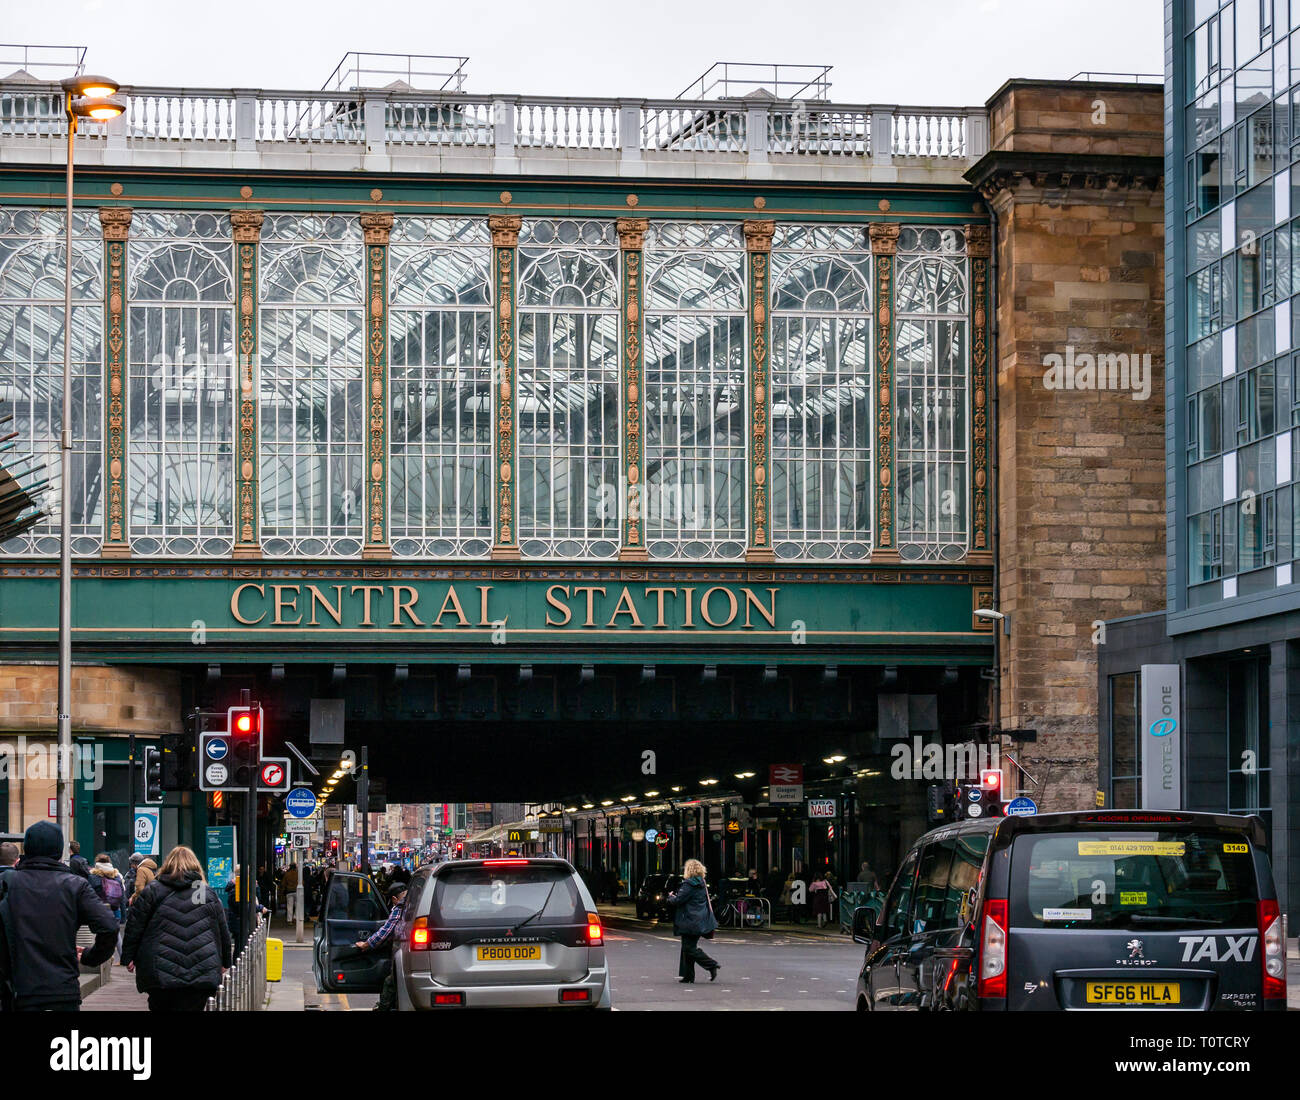 Ornati in stile vittoriano struttura in vetro, Glasgow Central Statiion, Argyle Street, Scotland, Regno Unito Foto Stock